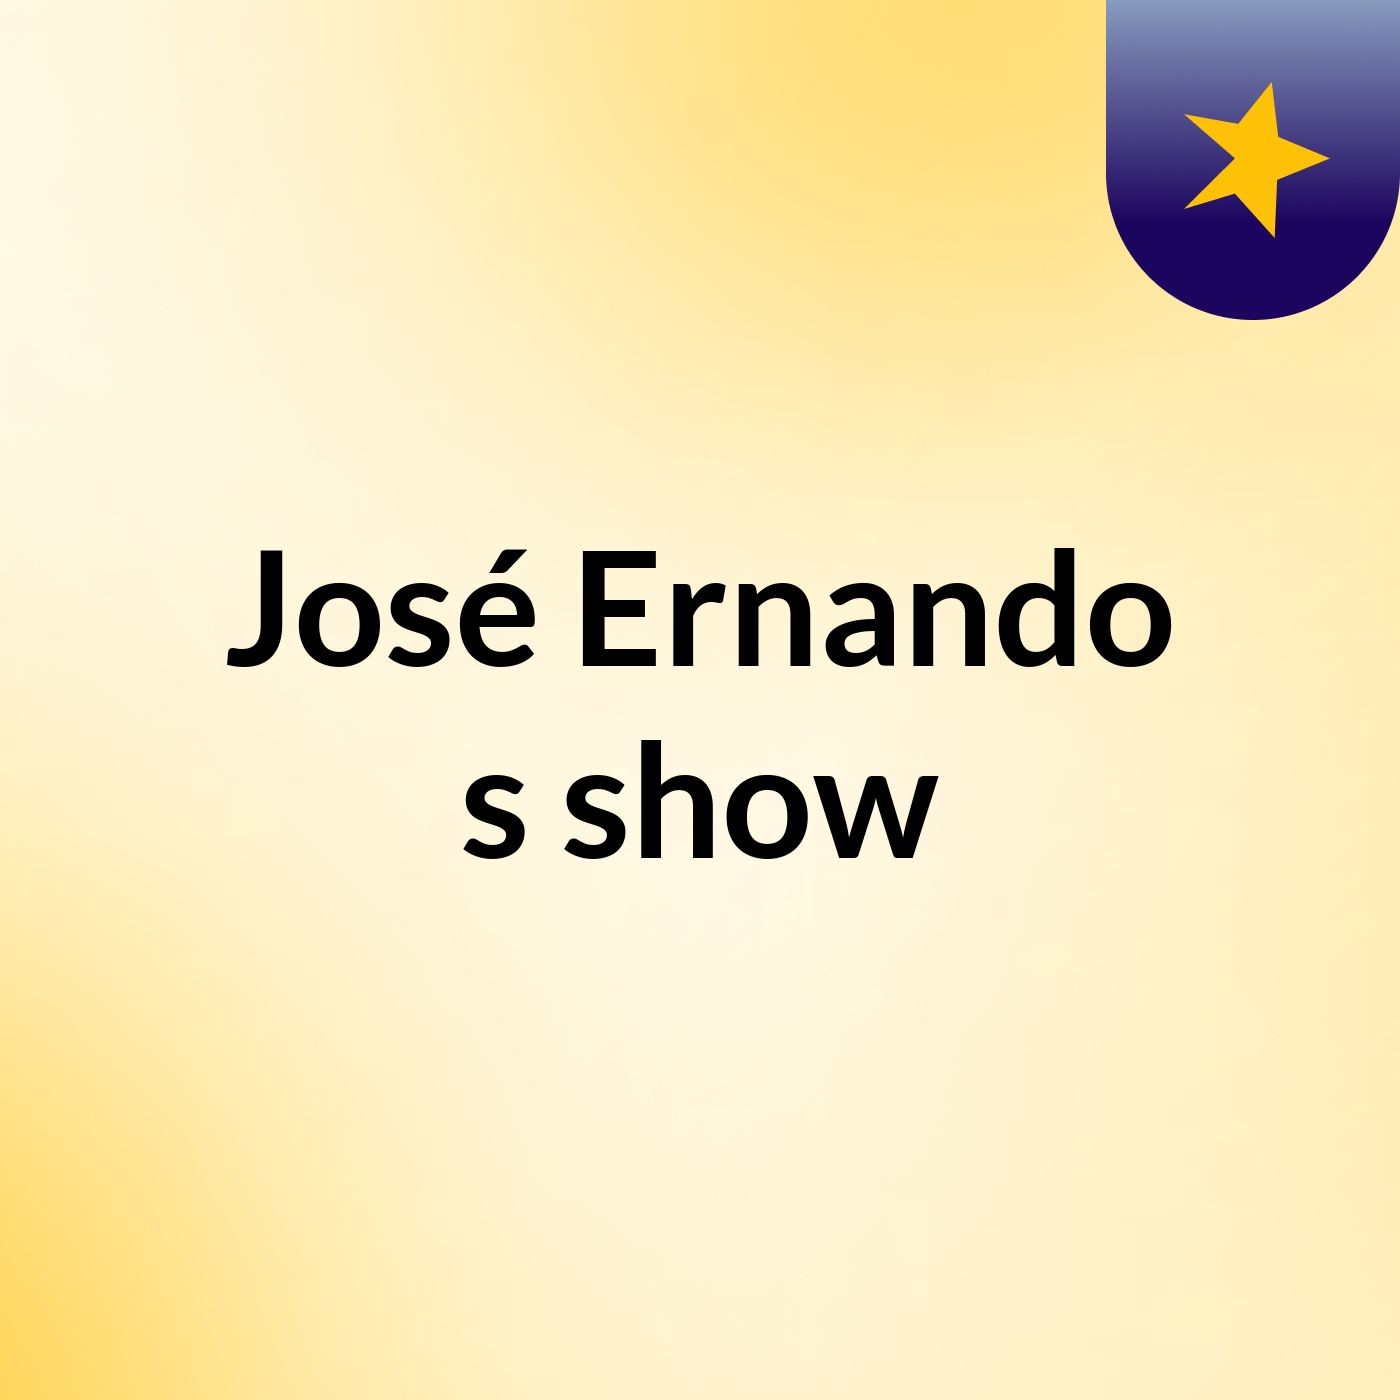 José Ernando's show